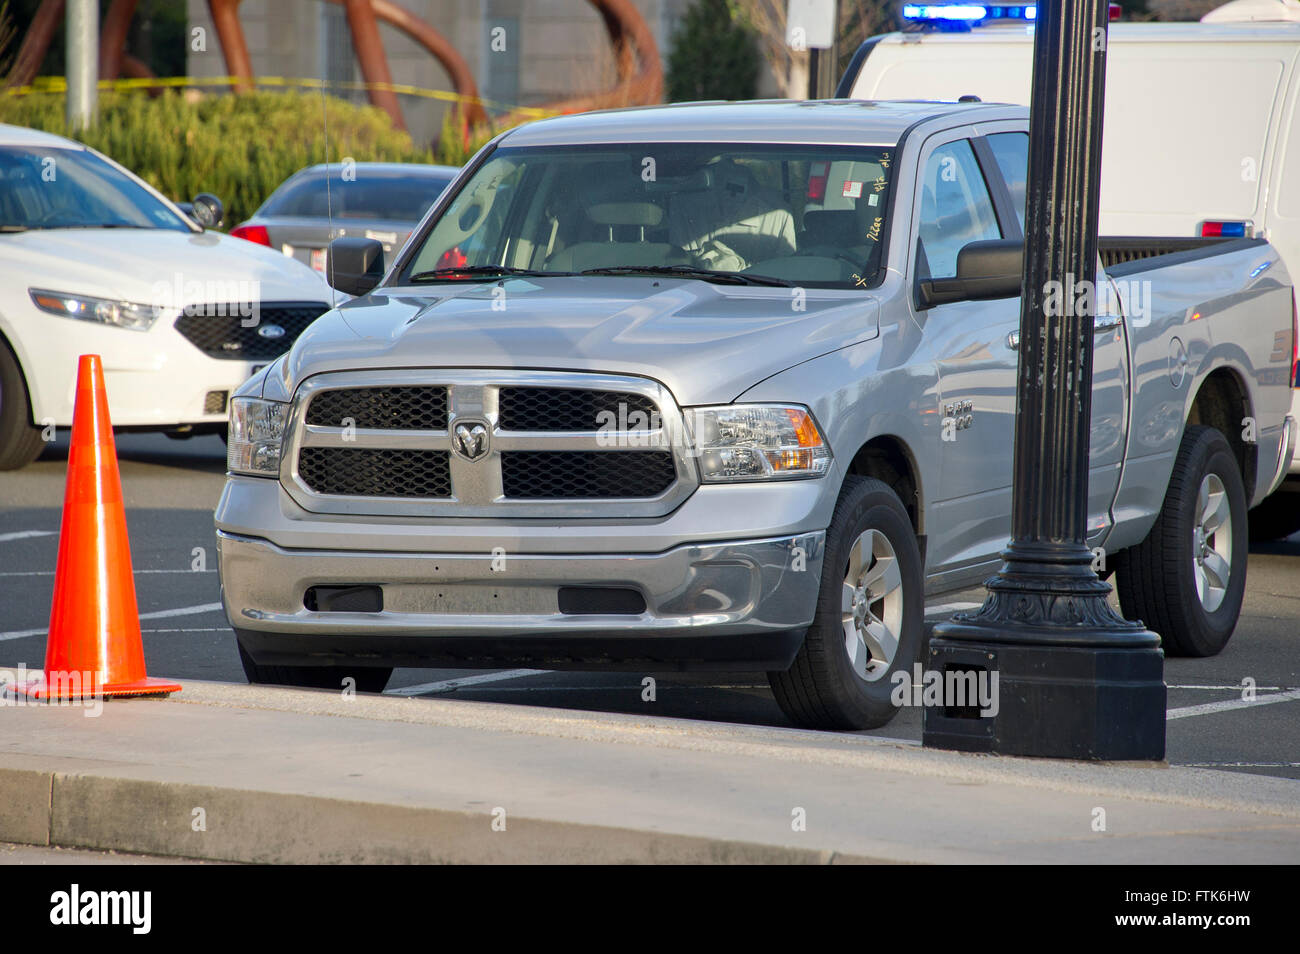 La actividad policial en torno a la camioneta Dodge Ram 1500 perteneciente  al Capitolio de los Estados Unidos shooter en los jardines del Capitolio de  los EE.UU. tras un tiroteo en el